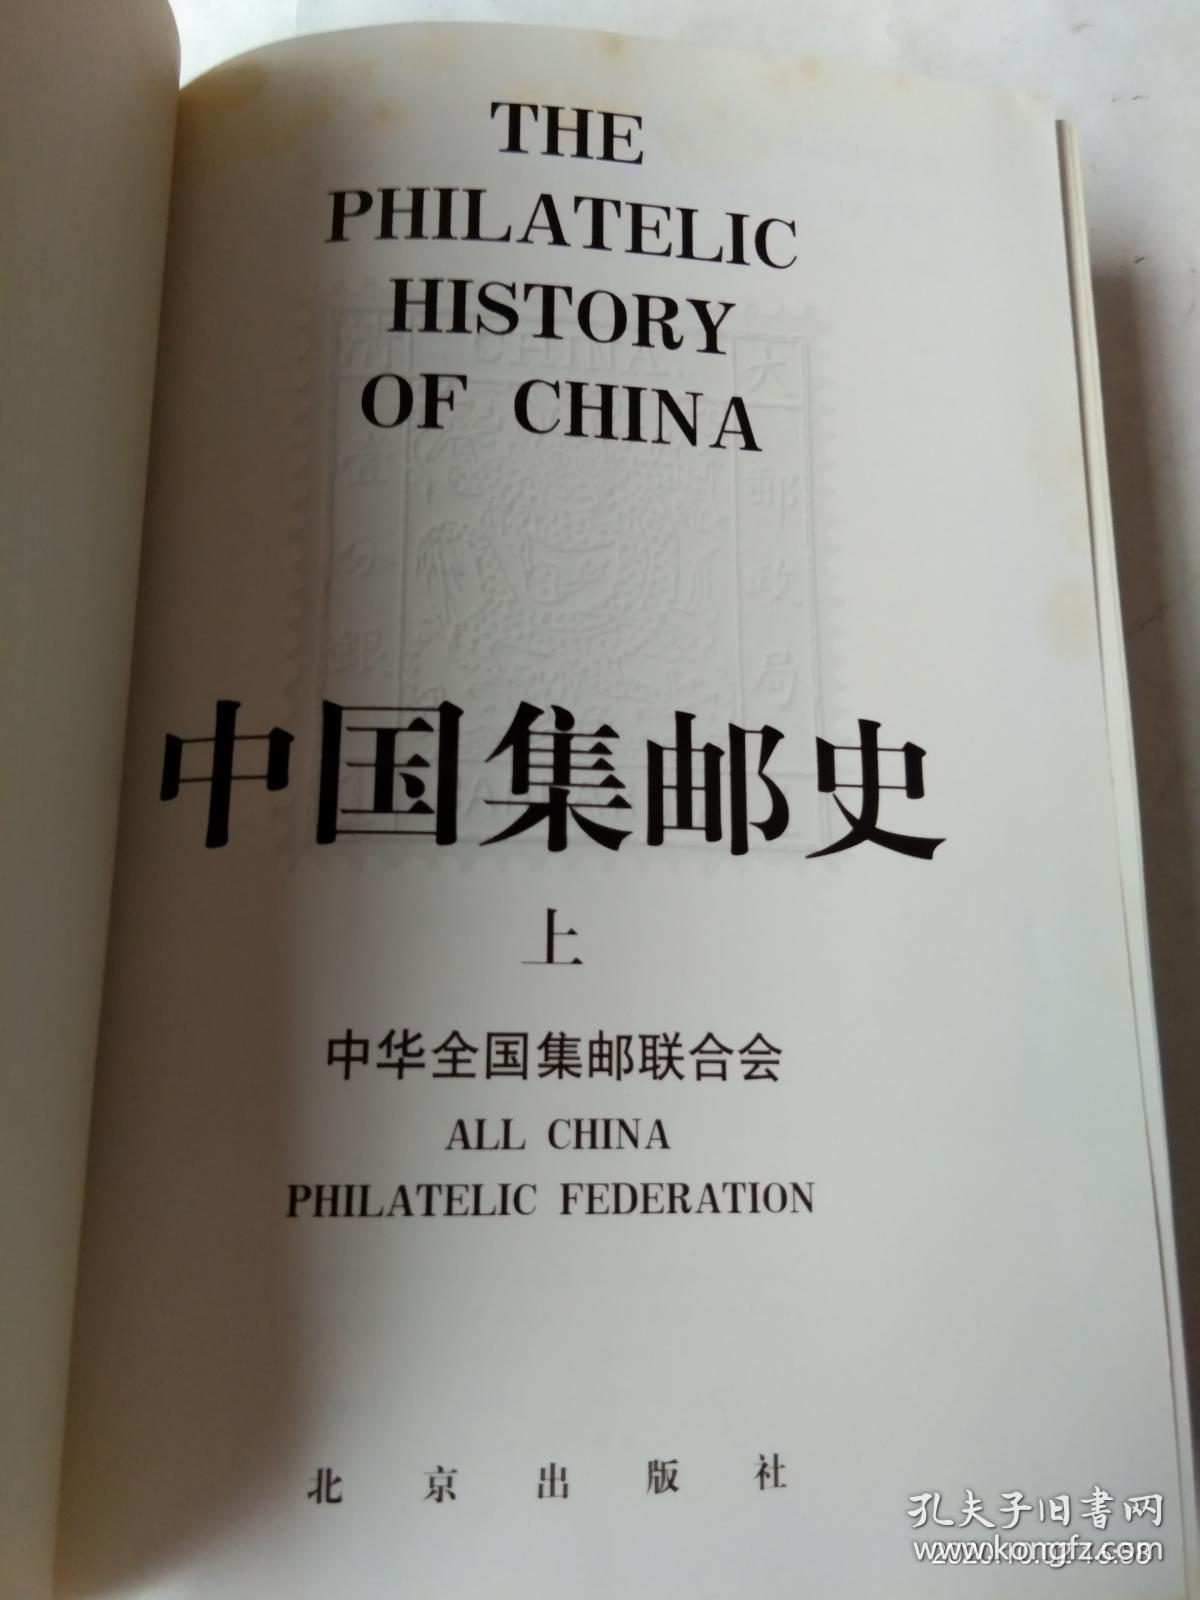 中国集邮史   上